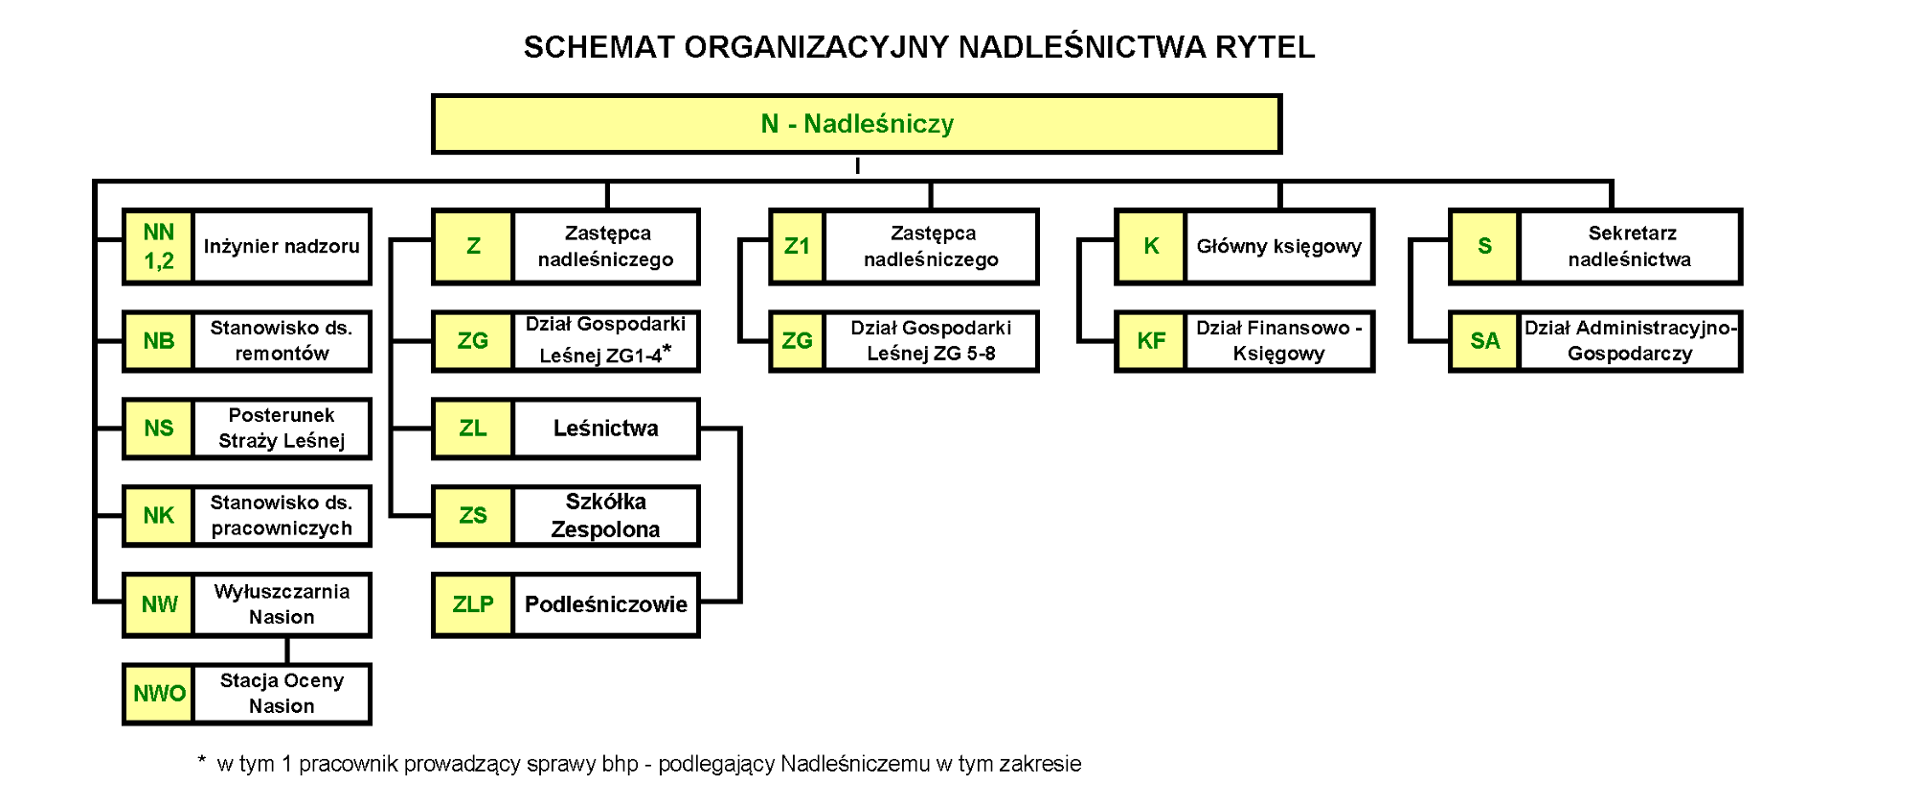 Schemat organizacyjny Nadleśnictwa Rytel od dnia 25.05.2022 r.